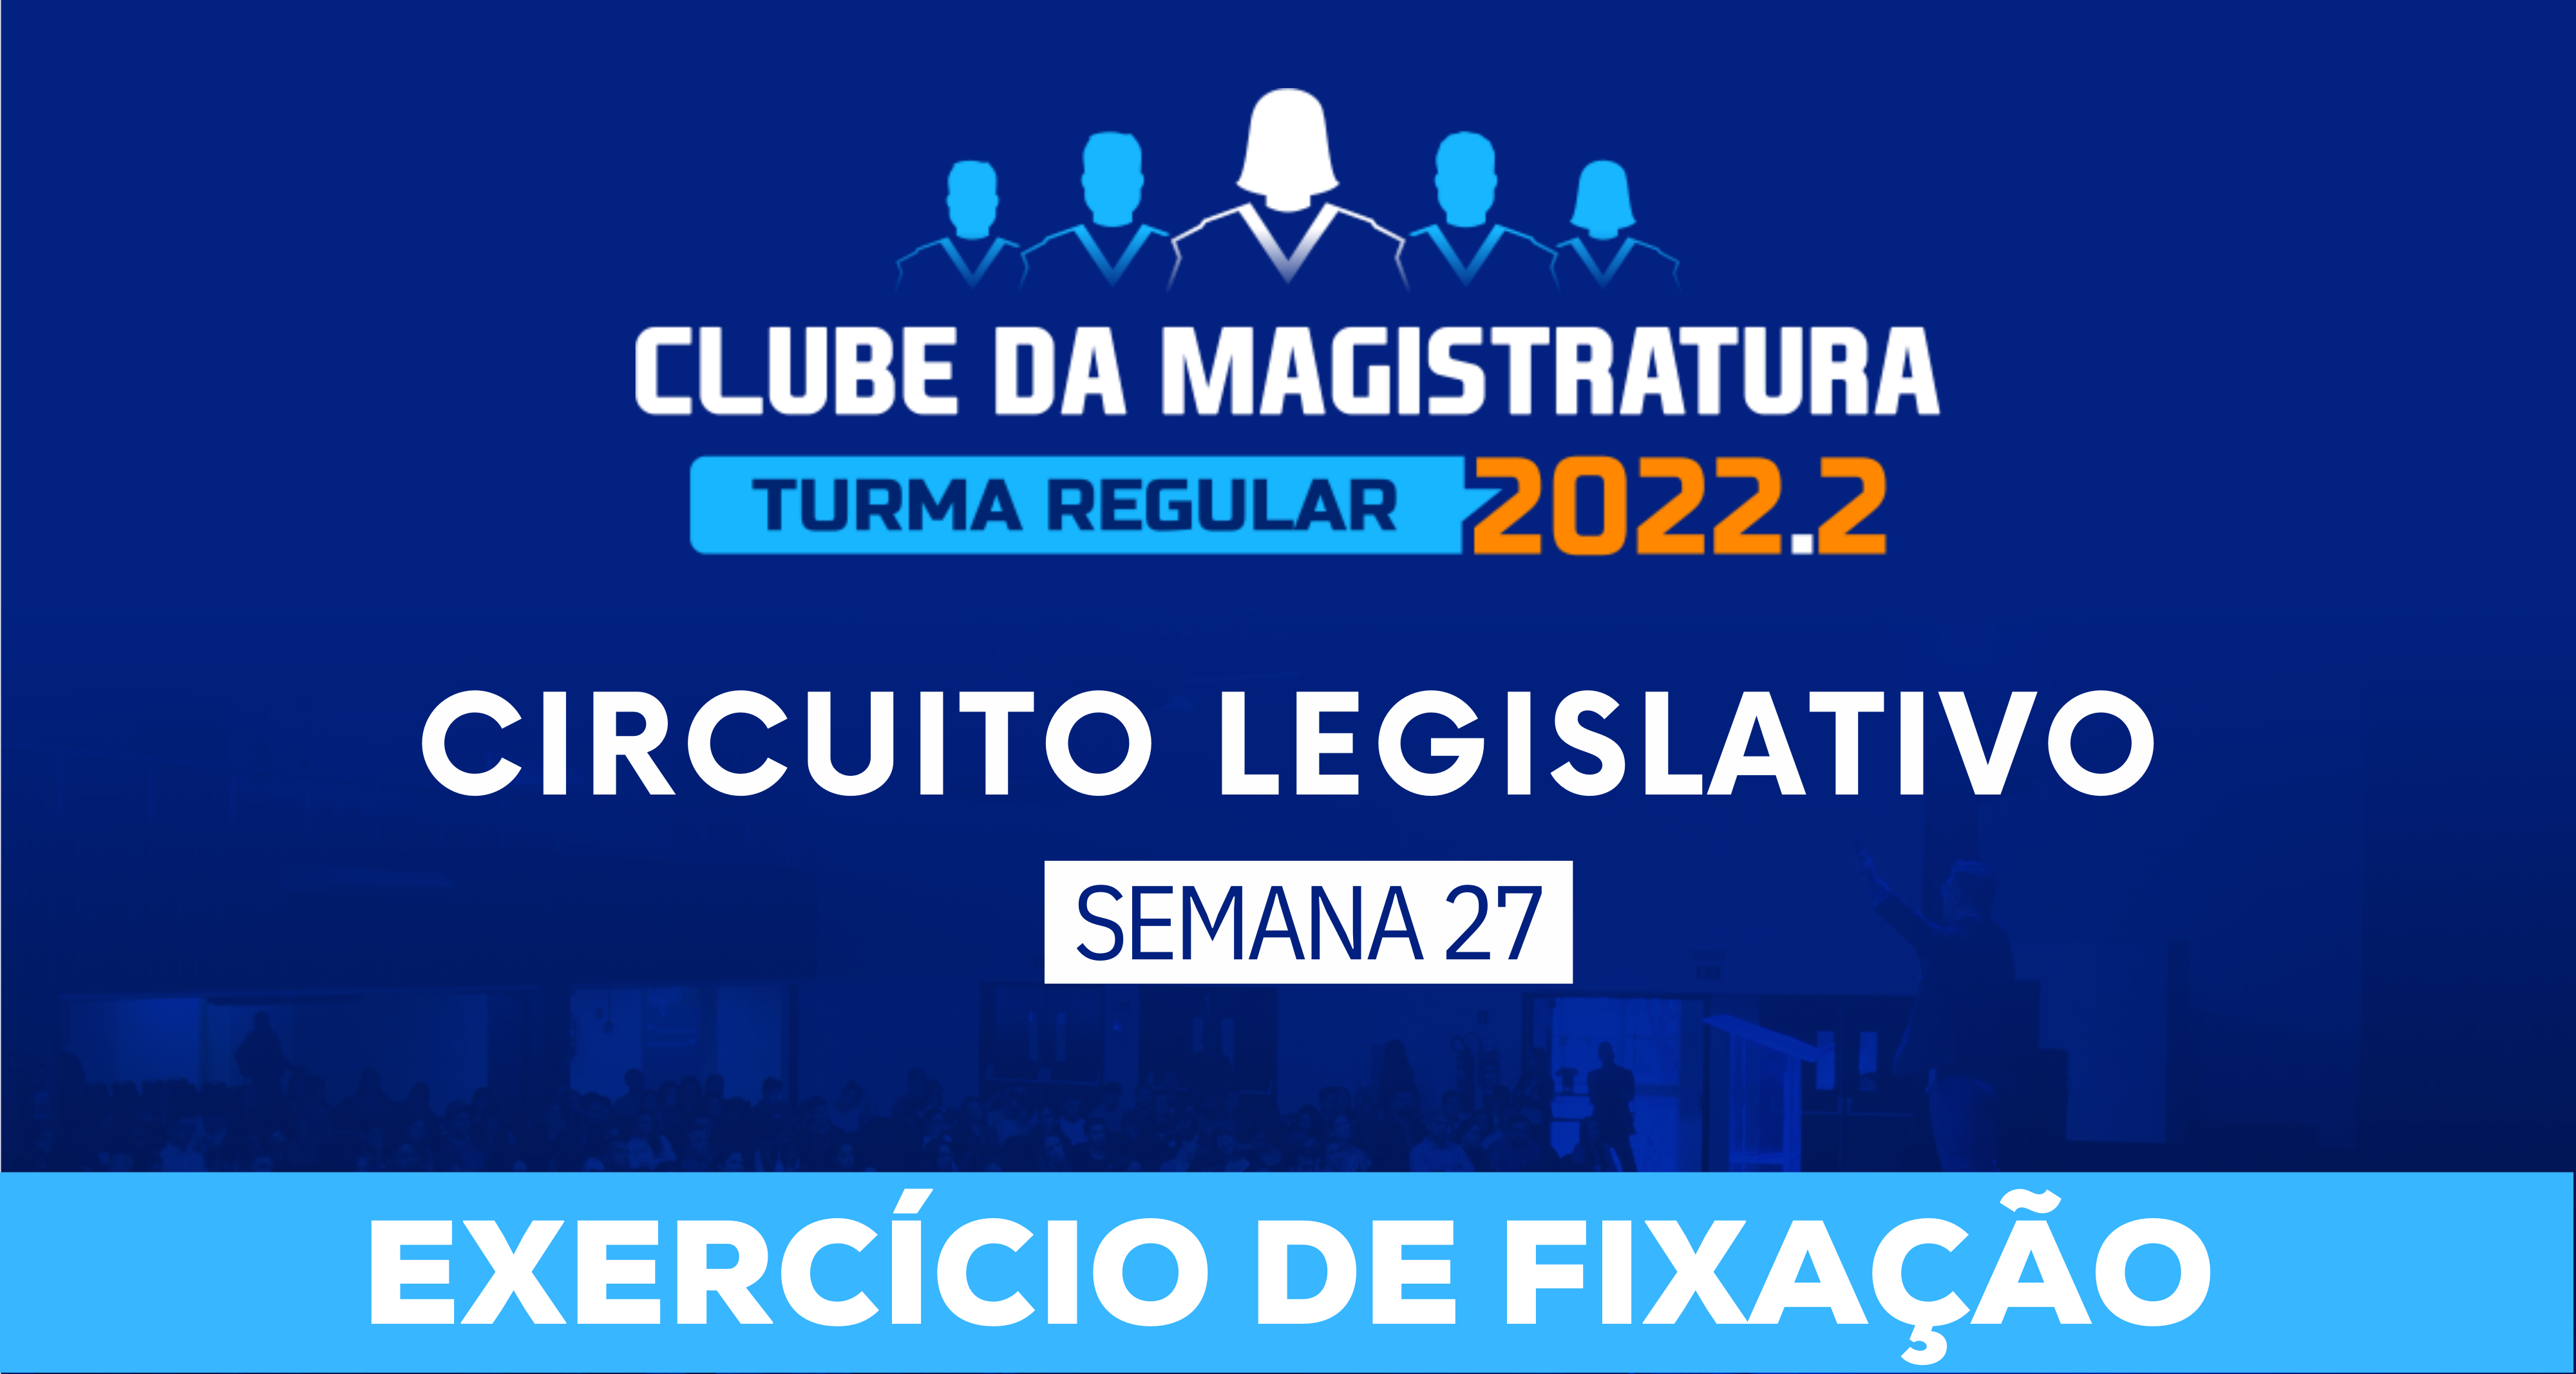 Circuito Legislativo 2022.2 (Clube da Magistratura - Semana 27)